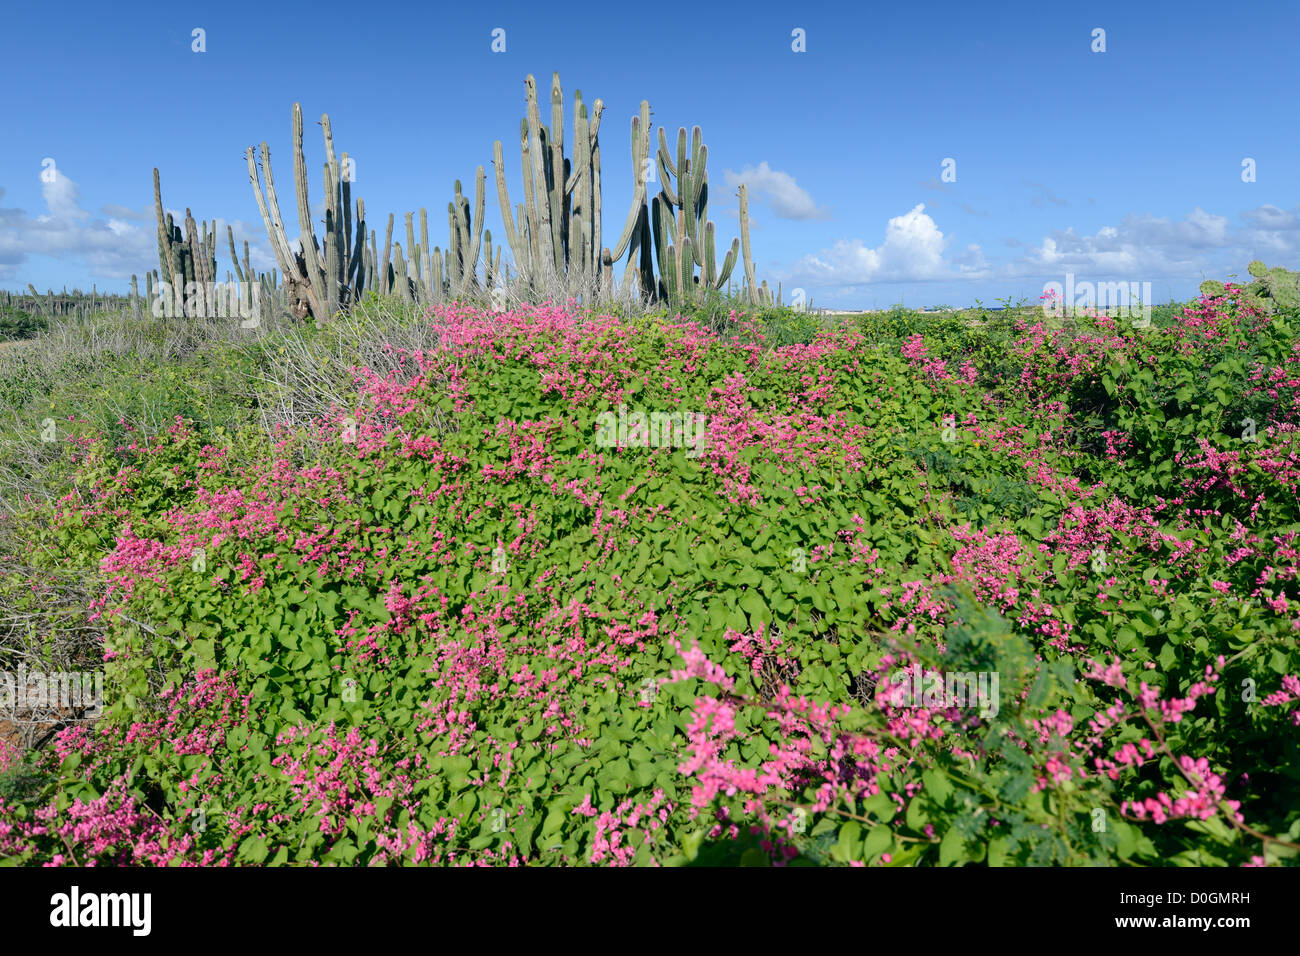 Paysage typique de Bonaire, Antilles néerlandaises, dans la mer des Caraïbes Banque D'Images